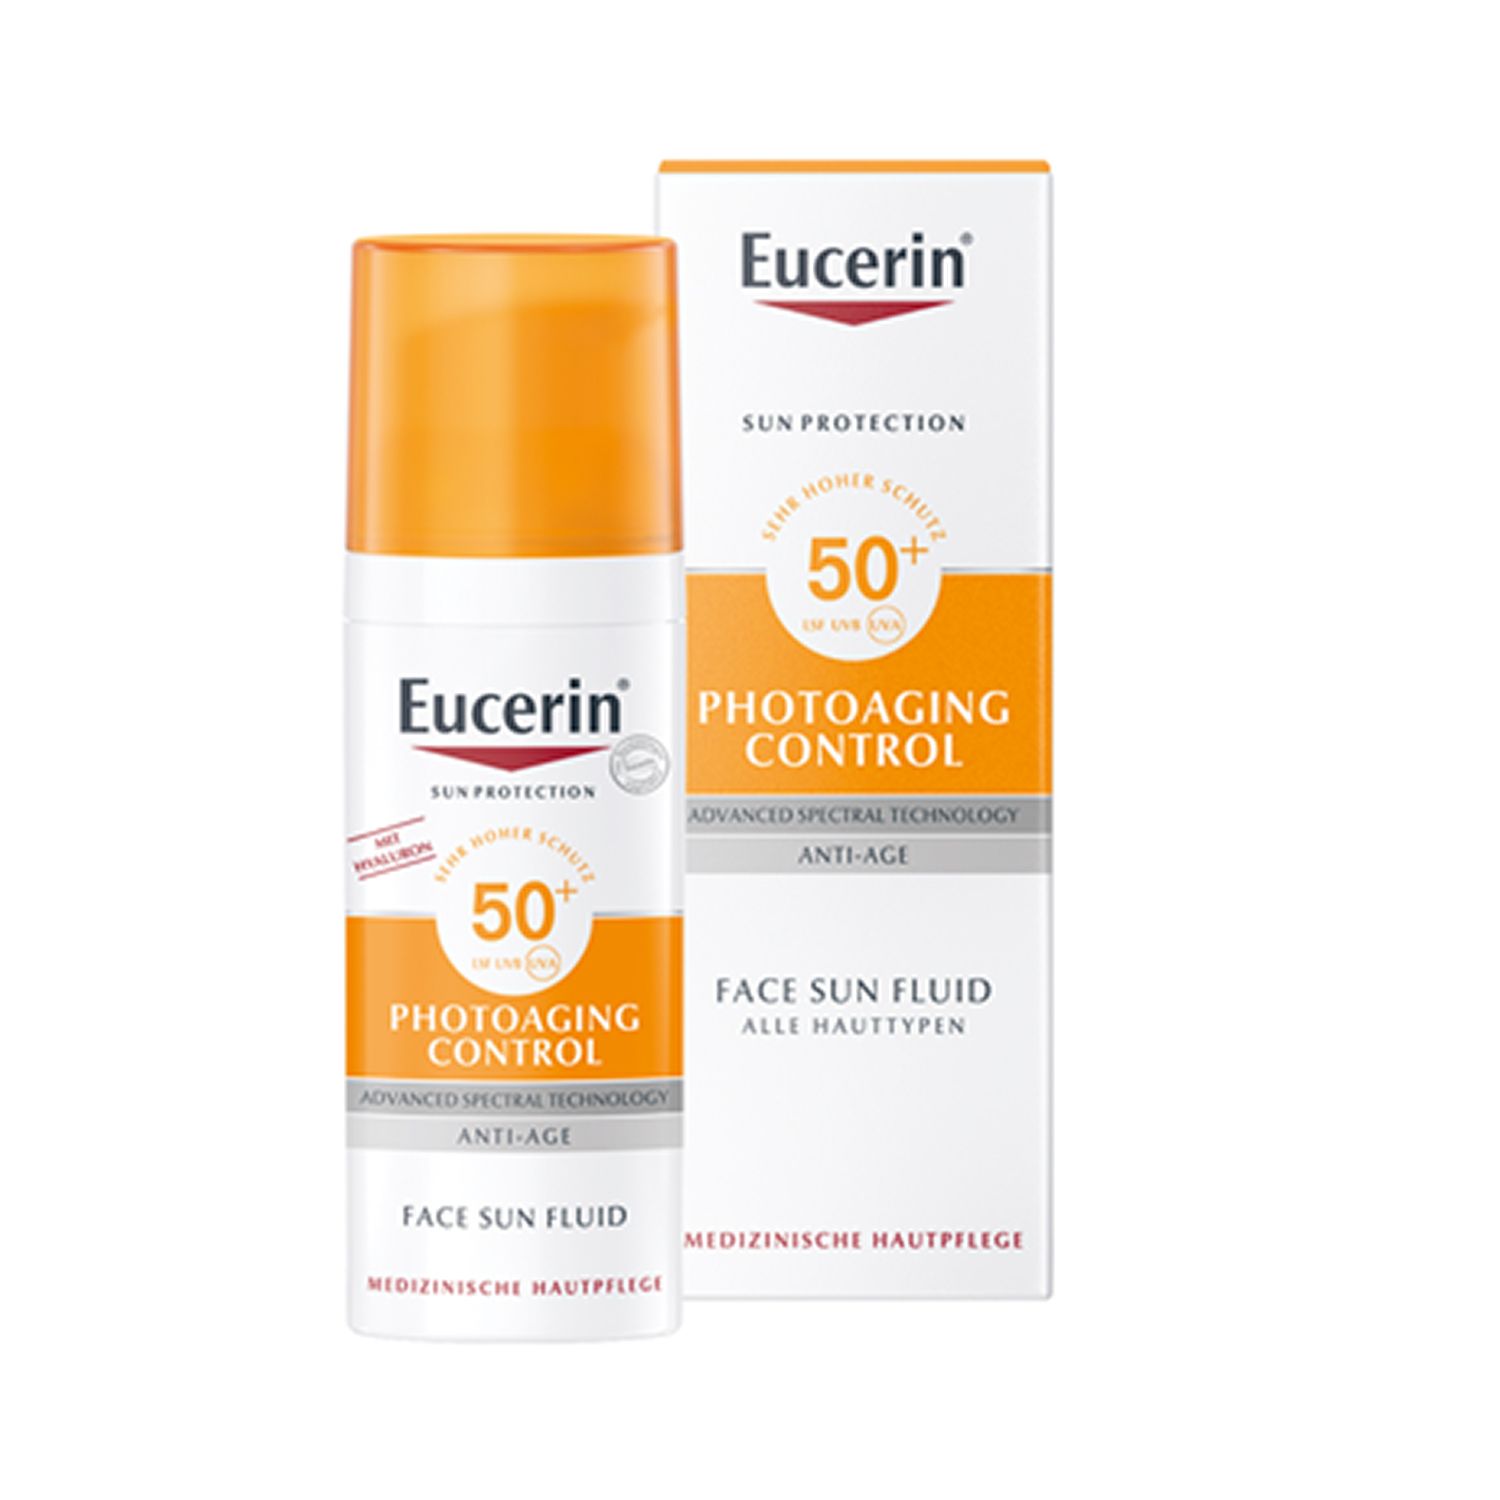 Eucerin® Photoaging Control Face Sun Fluid LSF 50 + Eucerin Hyaluron-Filler Intensiv-Maske GRATIS 50 ml - shop-apotheke.com